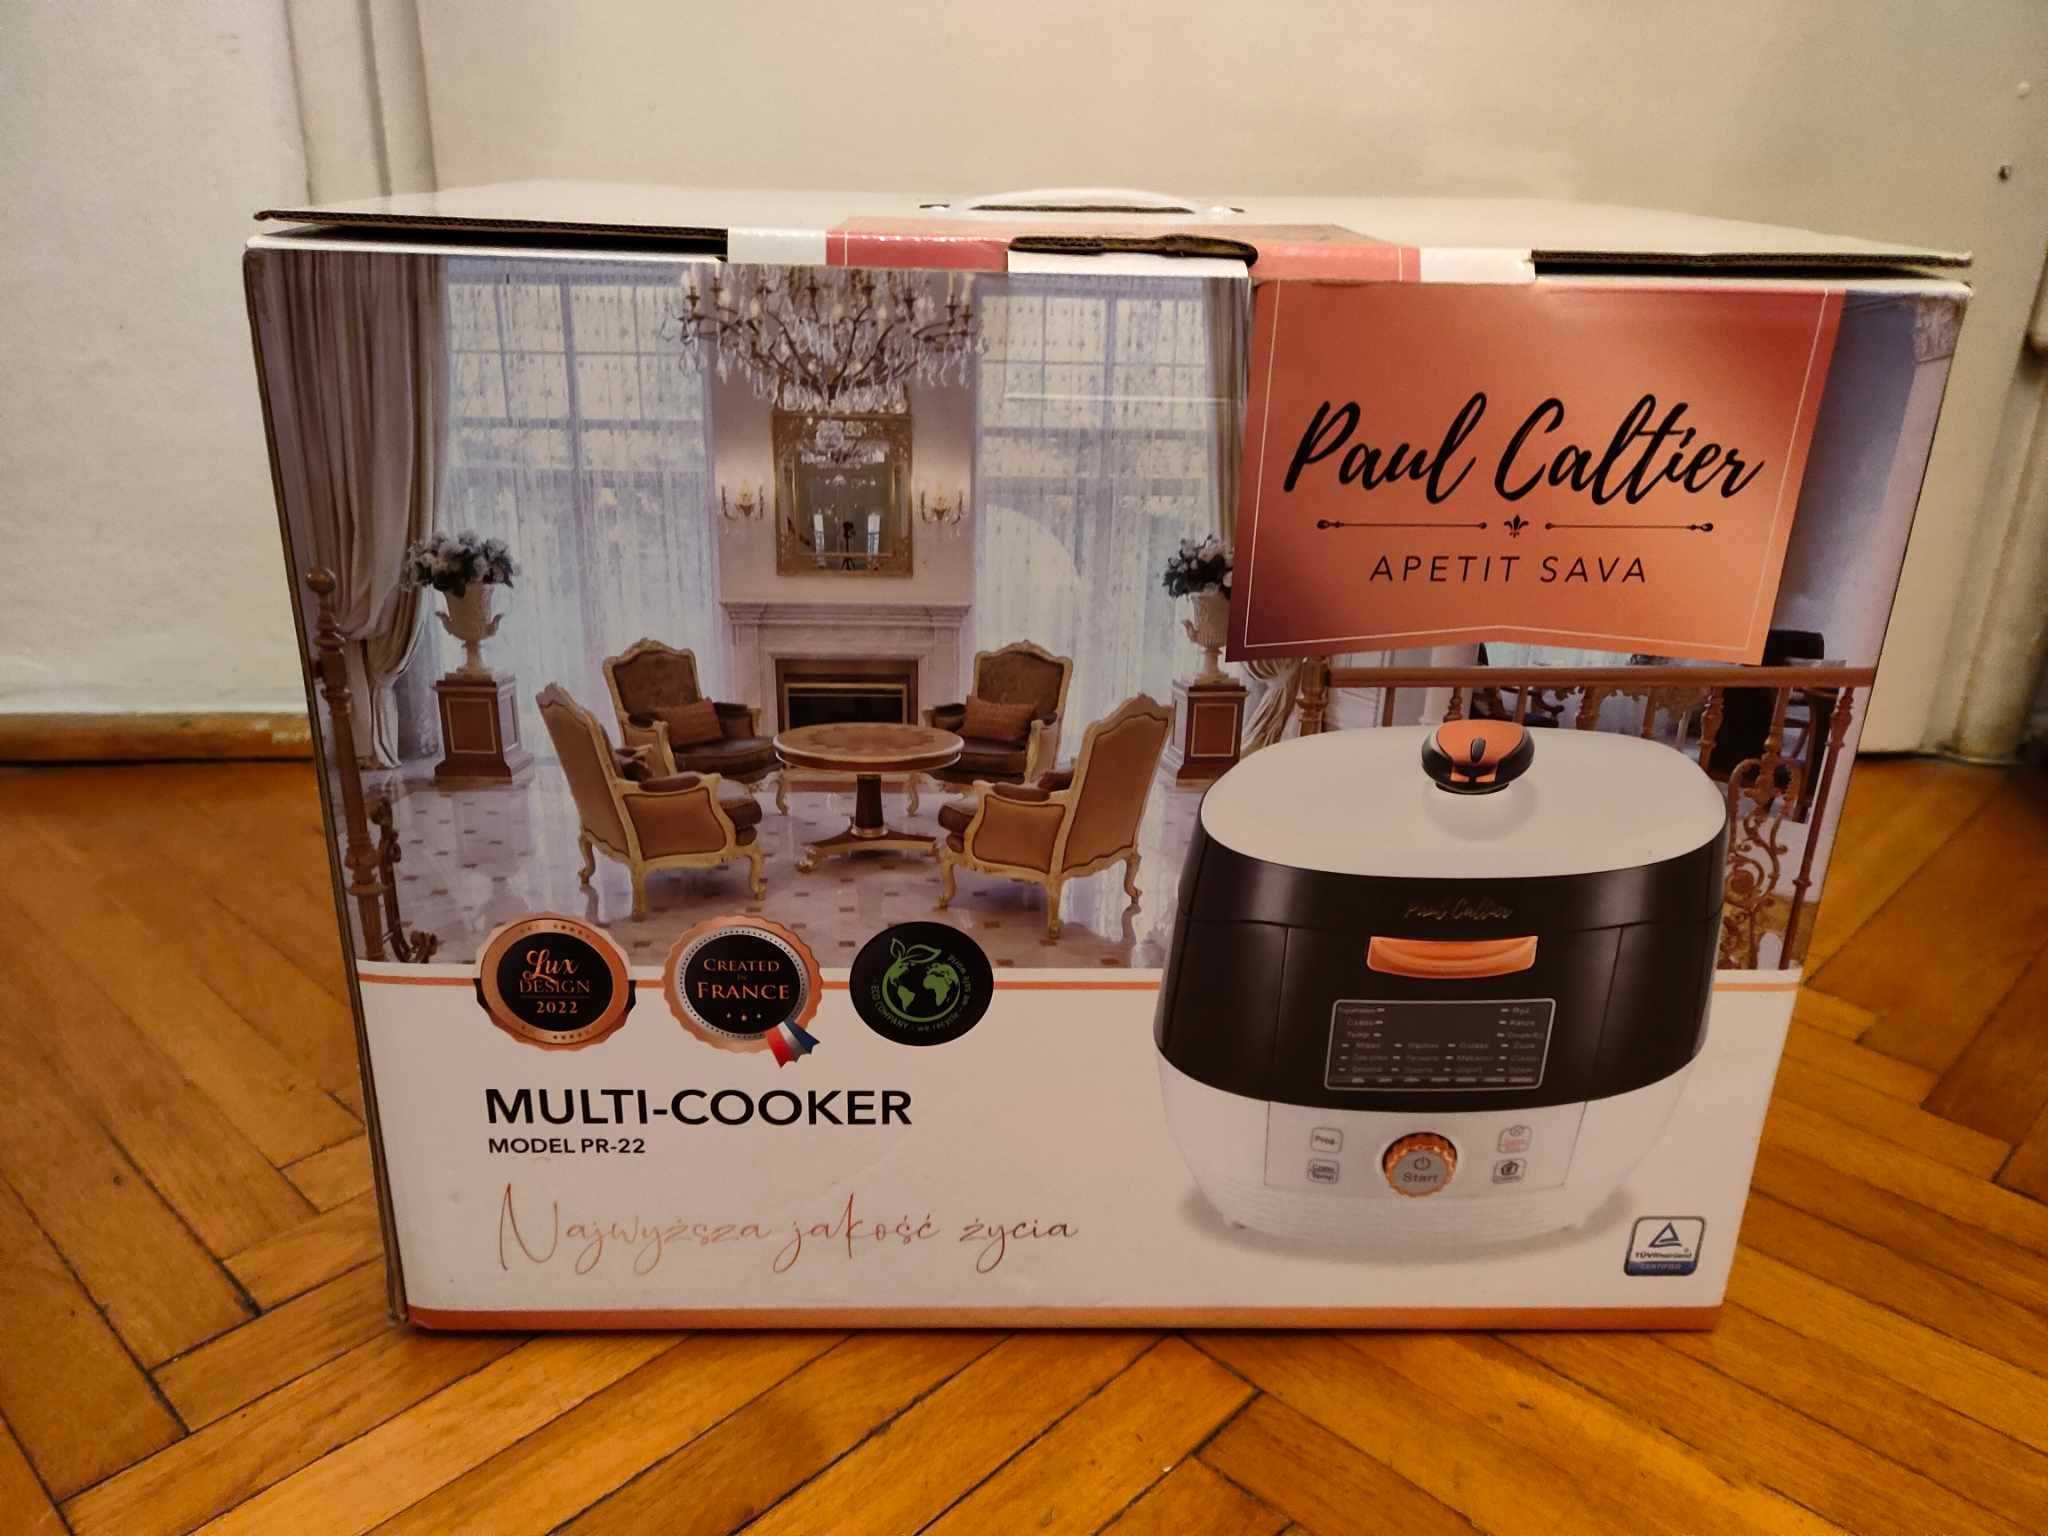 Paul Caltier Multi-cooker pr 22